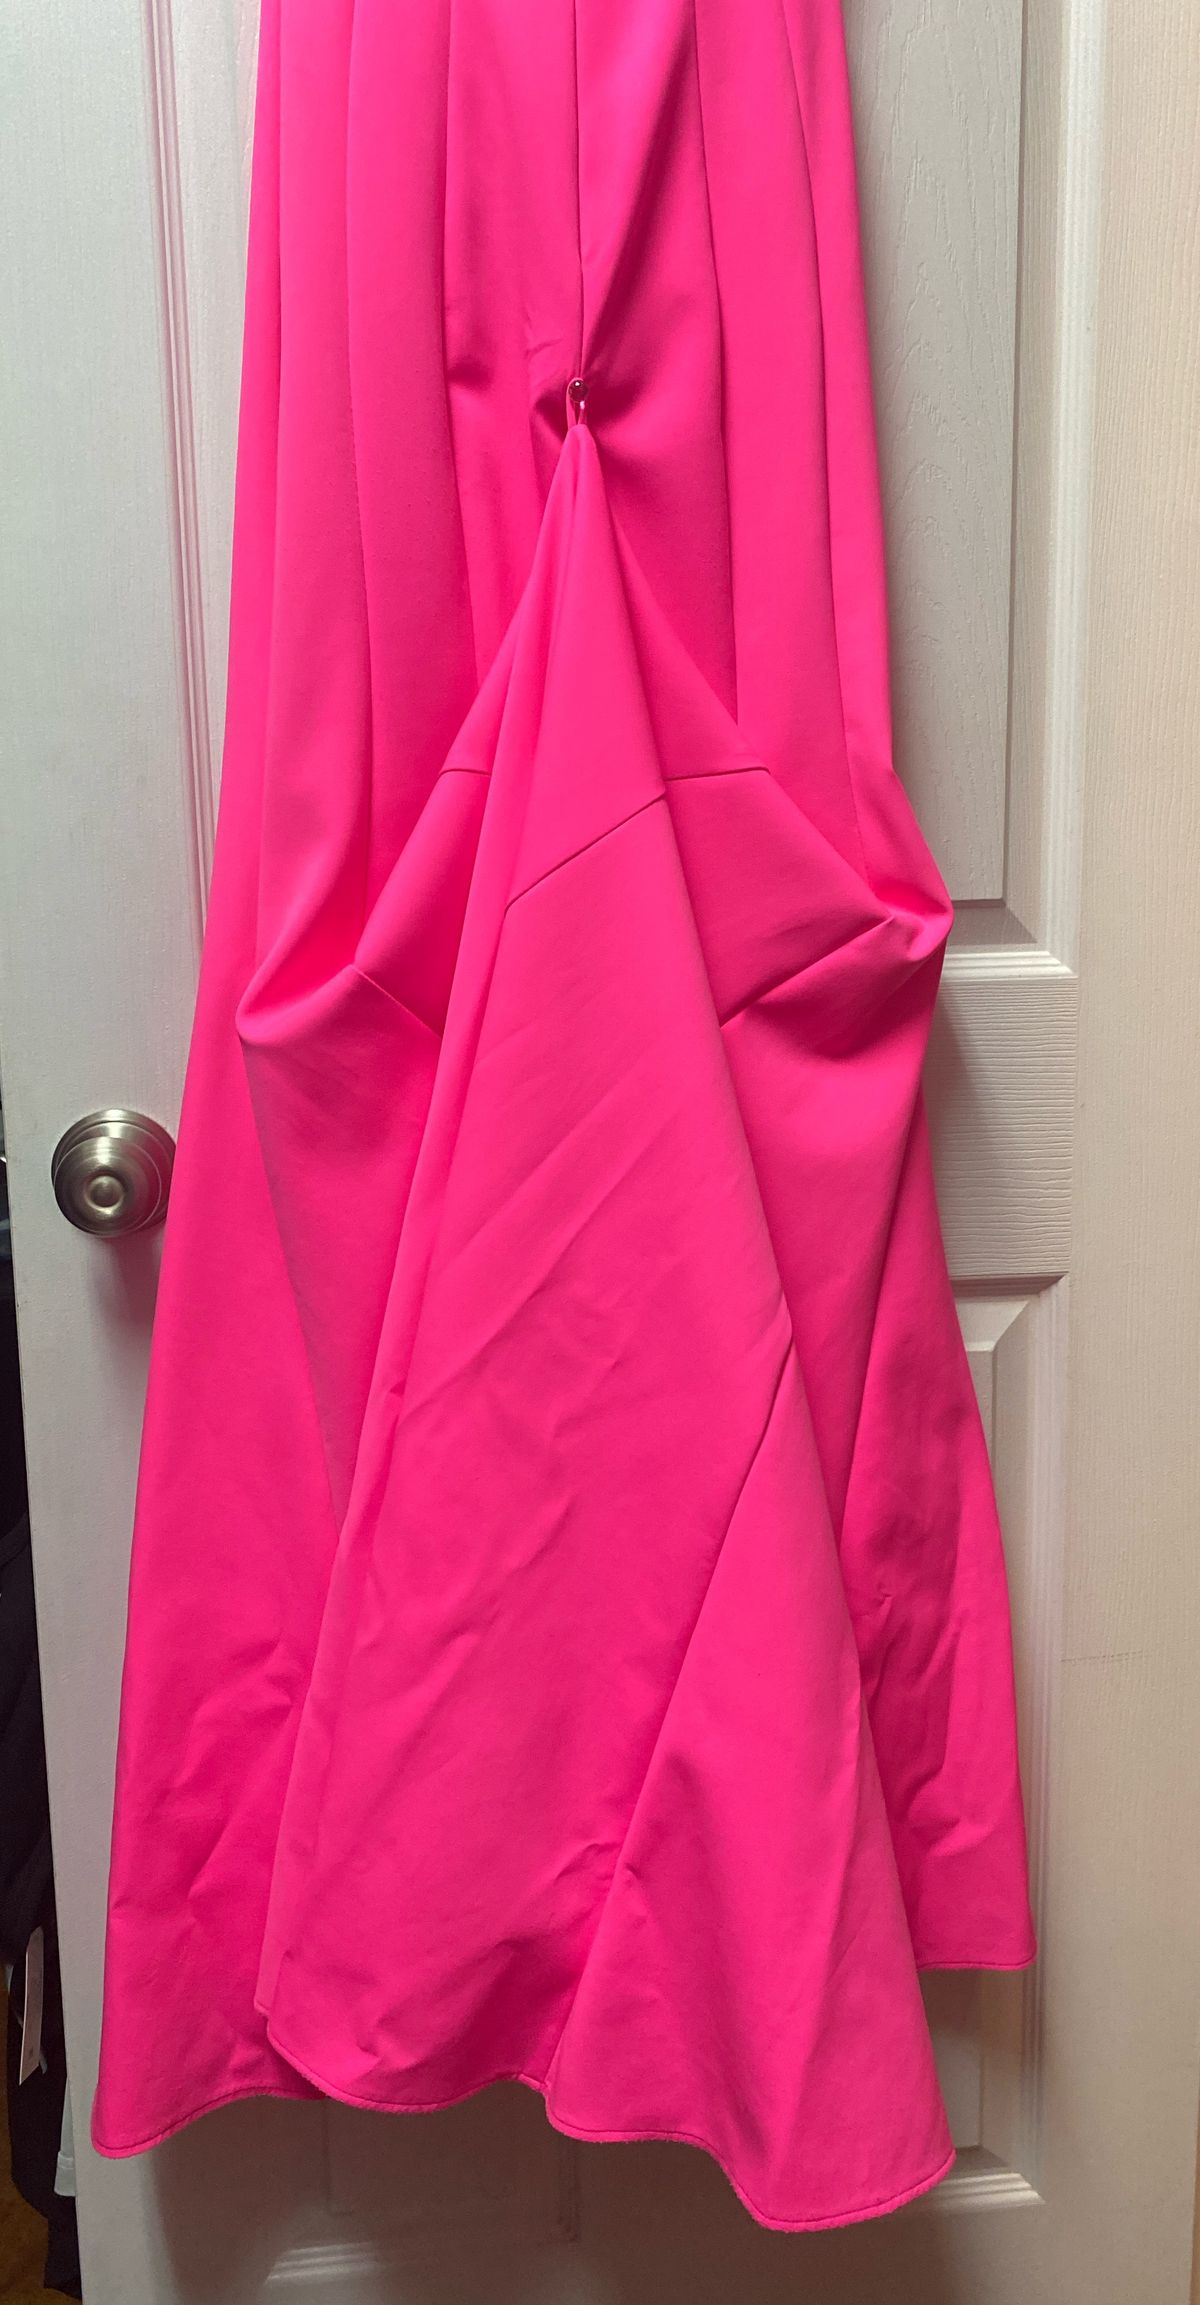 Size 0 Prom Off The Shoulder Hot Pink Side Slit Dress on Queenly